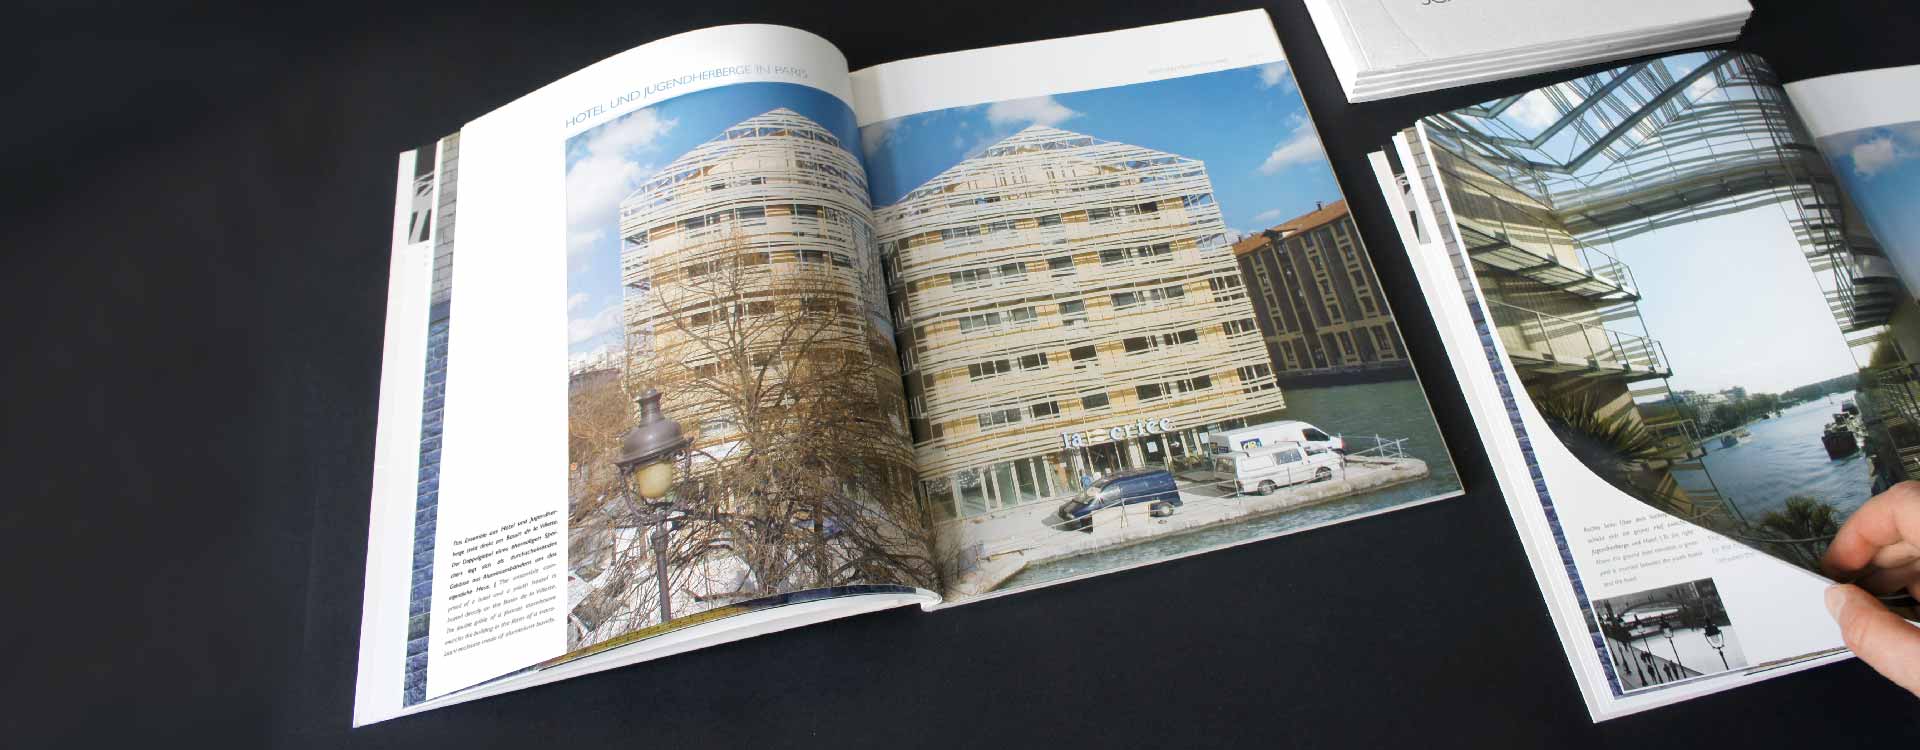 Innenseiten der Imagebroschüre JSWD Architekten, Köln; Design: Kattrin Richter | Büro für Grafikdesign